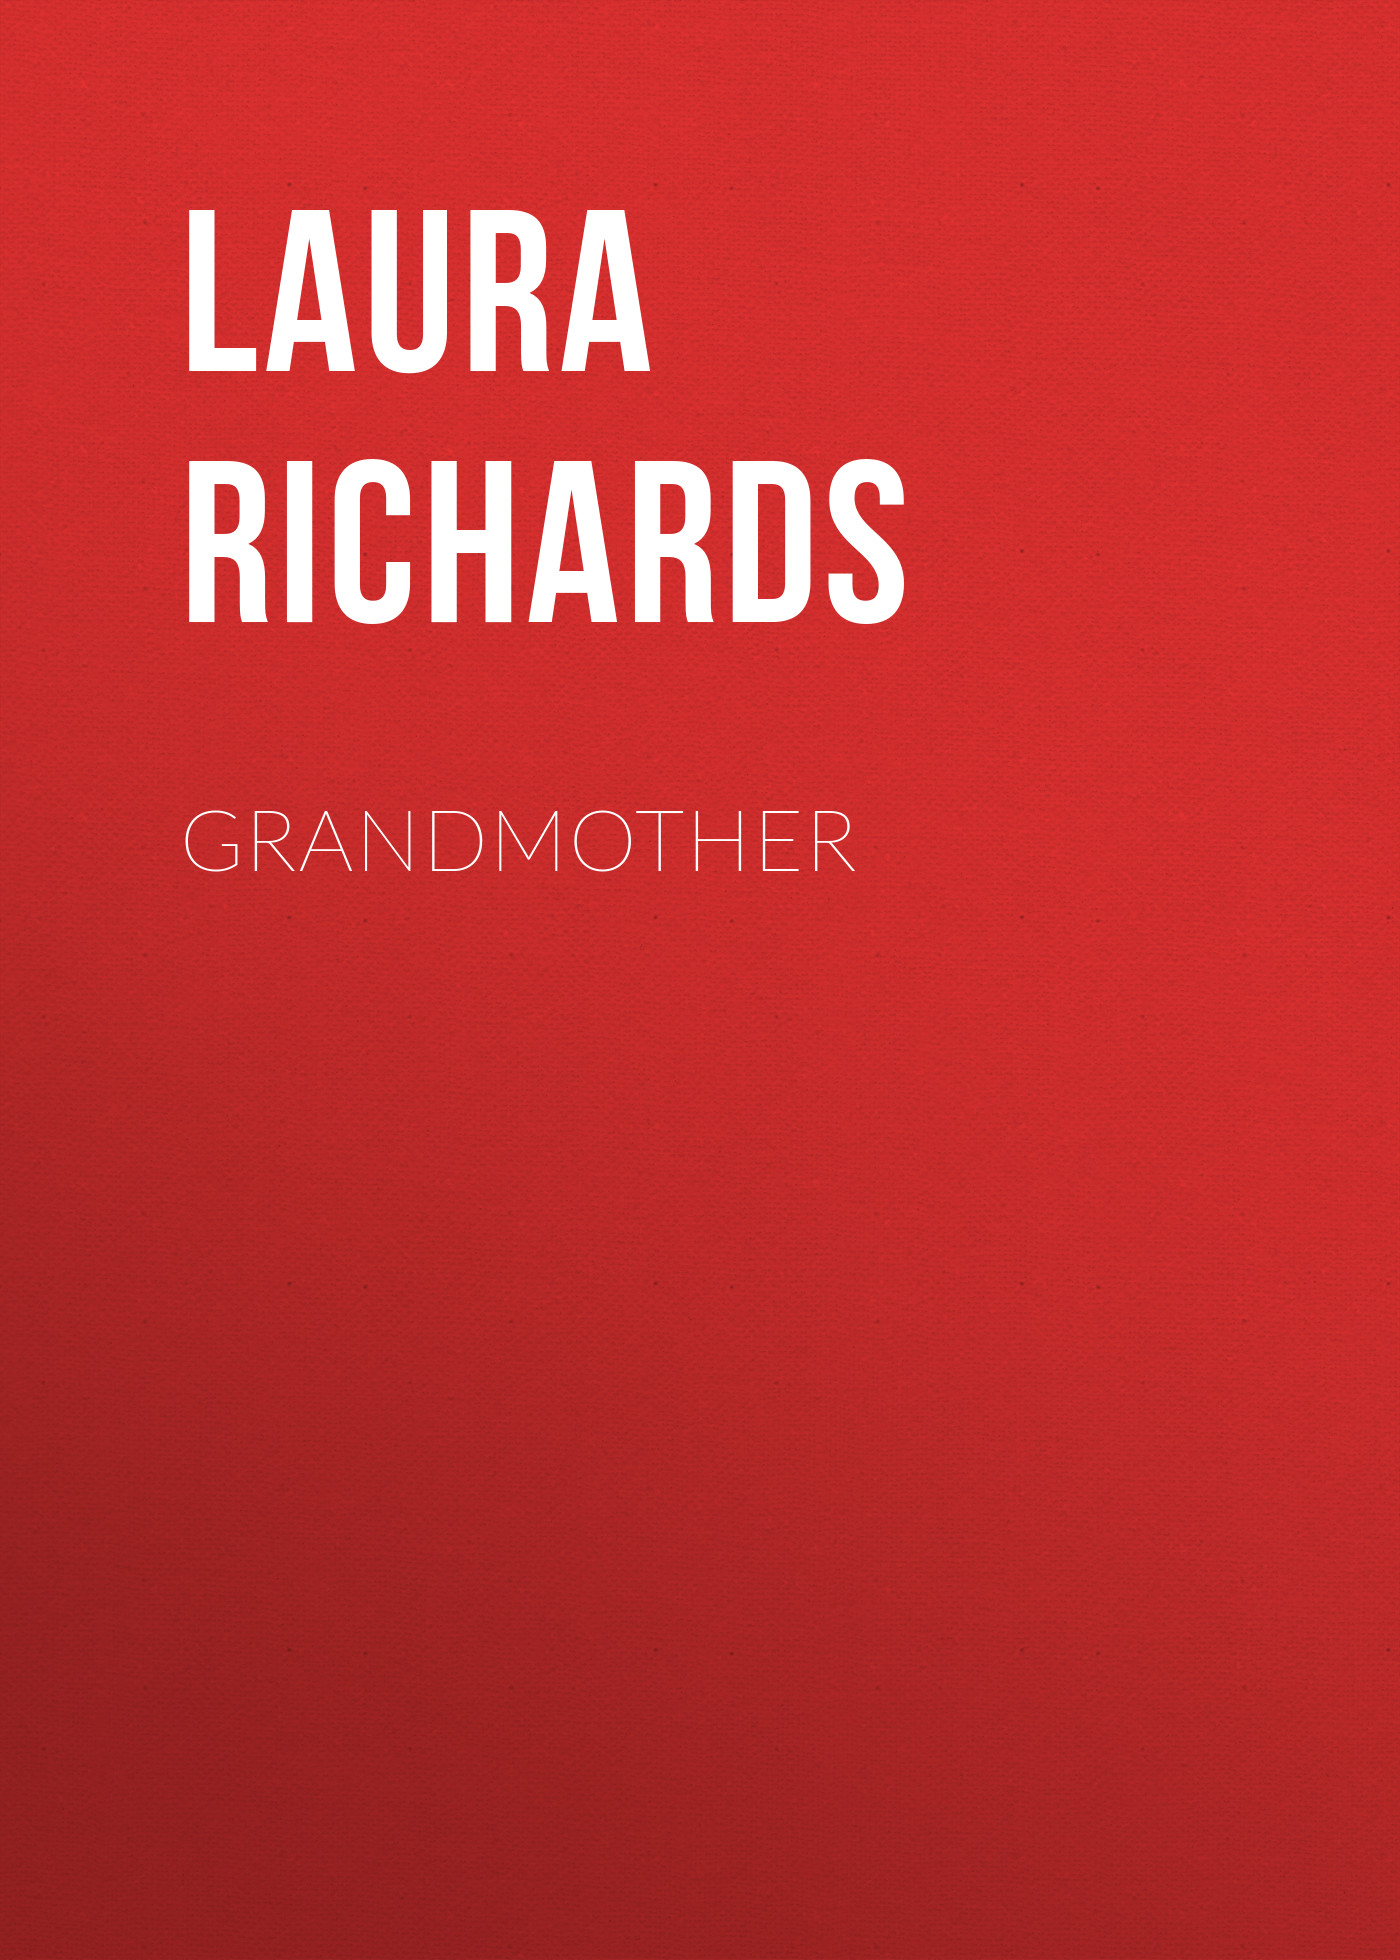 Книга Grandmother из серии , созданная Laura Richards, может относится к жанру Иностранные языки, Зарубежная классика. Стоимость электронной книги Grandmother с идентификатором 23161627 составляет 5.99 руб.